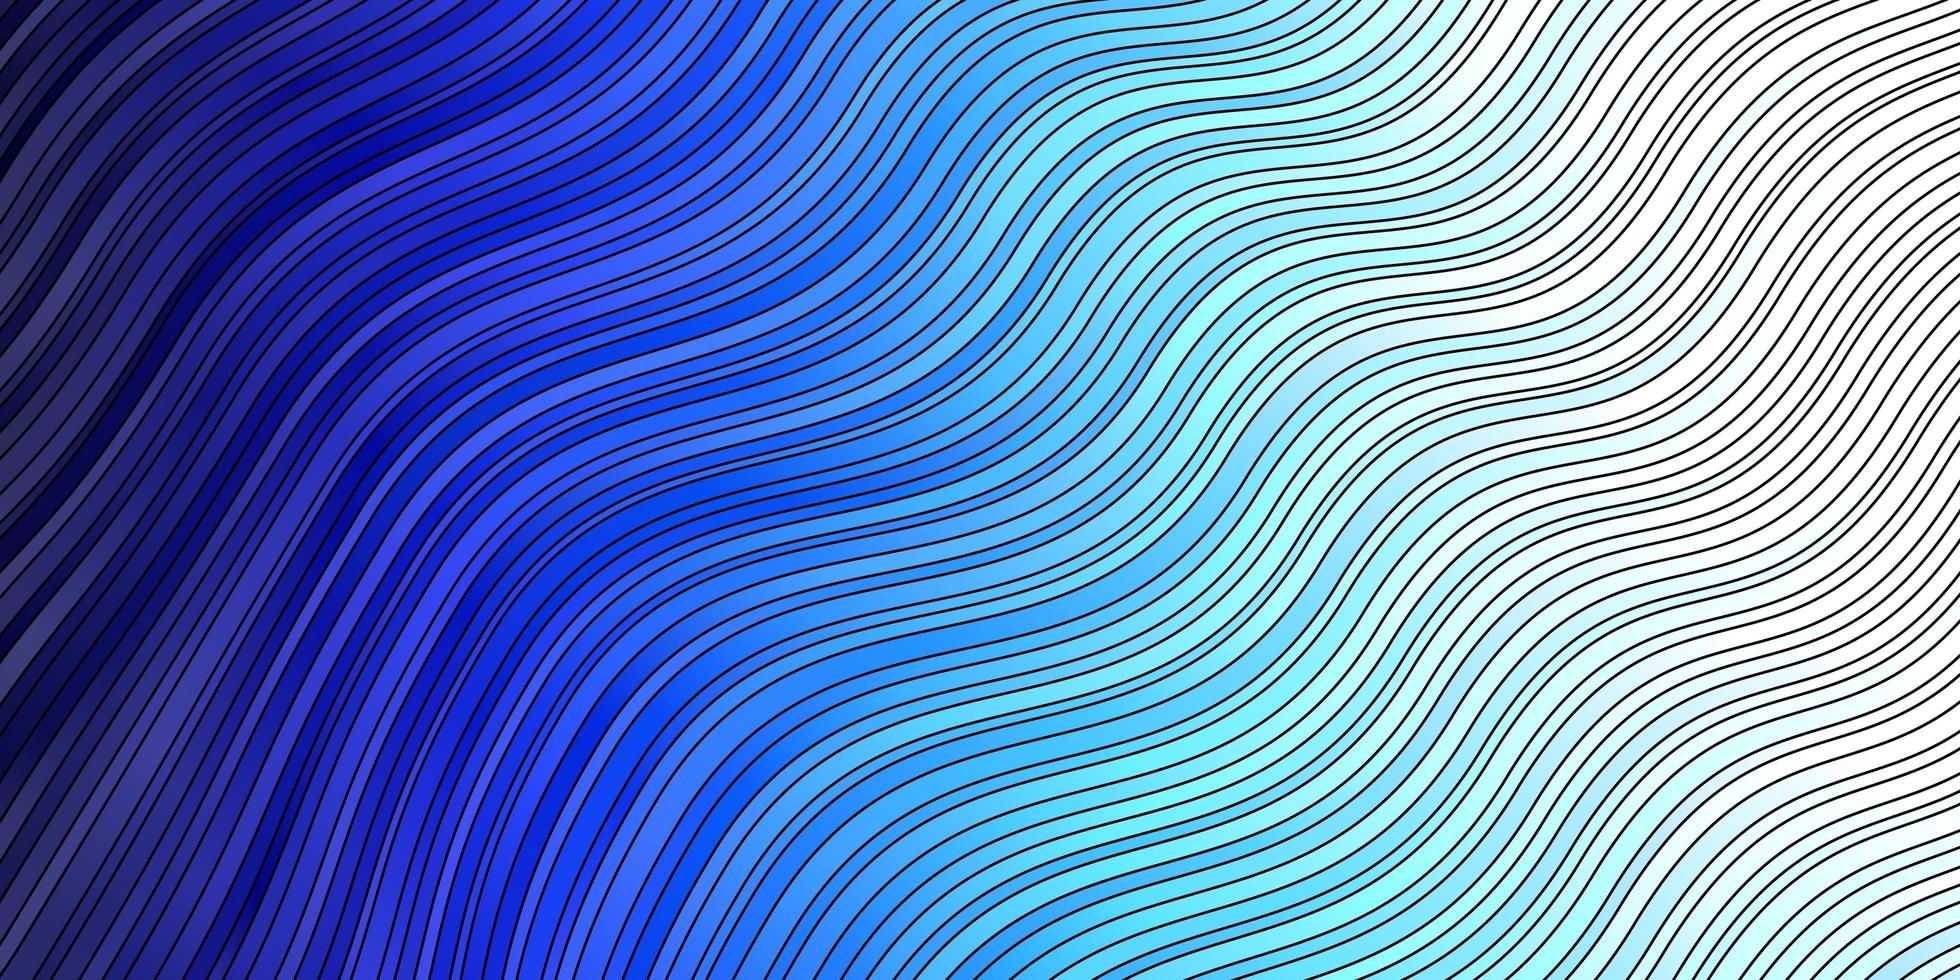 lichtblauwe vector sjabloon met wrange lijnen.